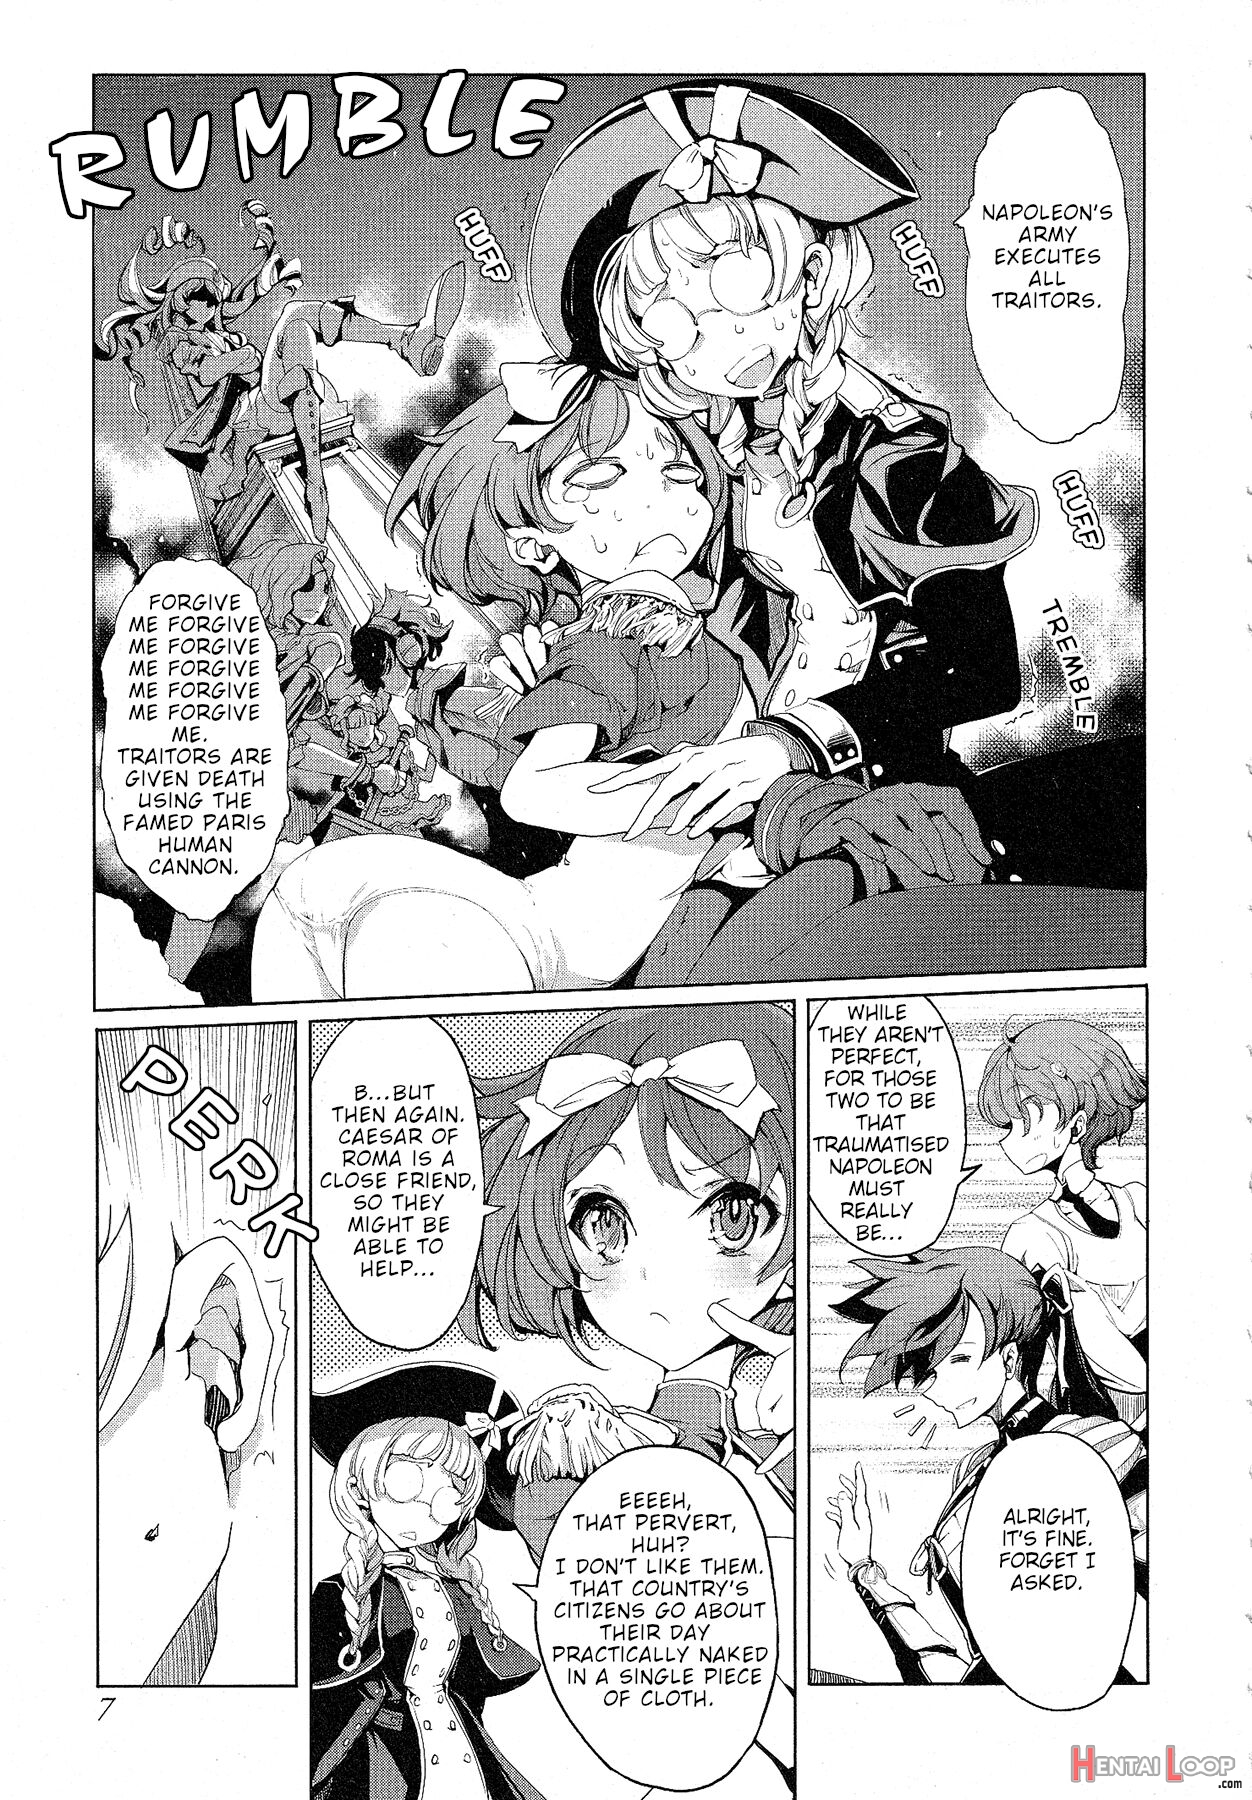 Eiyuu Senki - The World Conquest Ch. 7 page 7